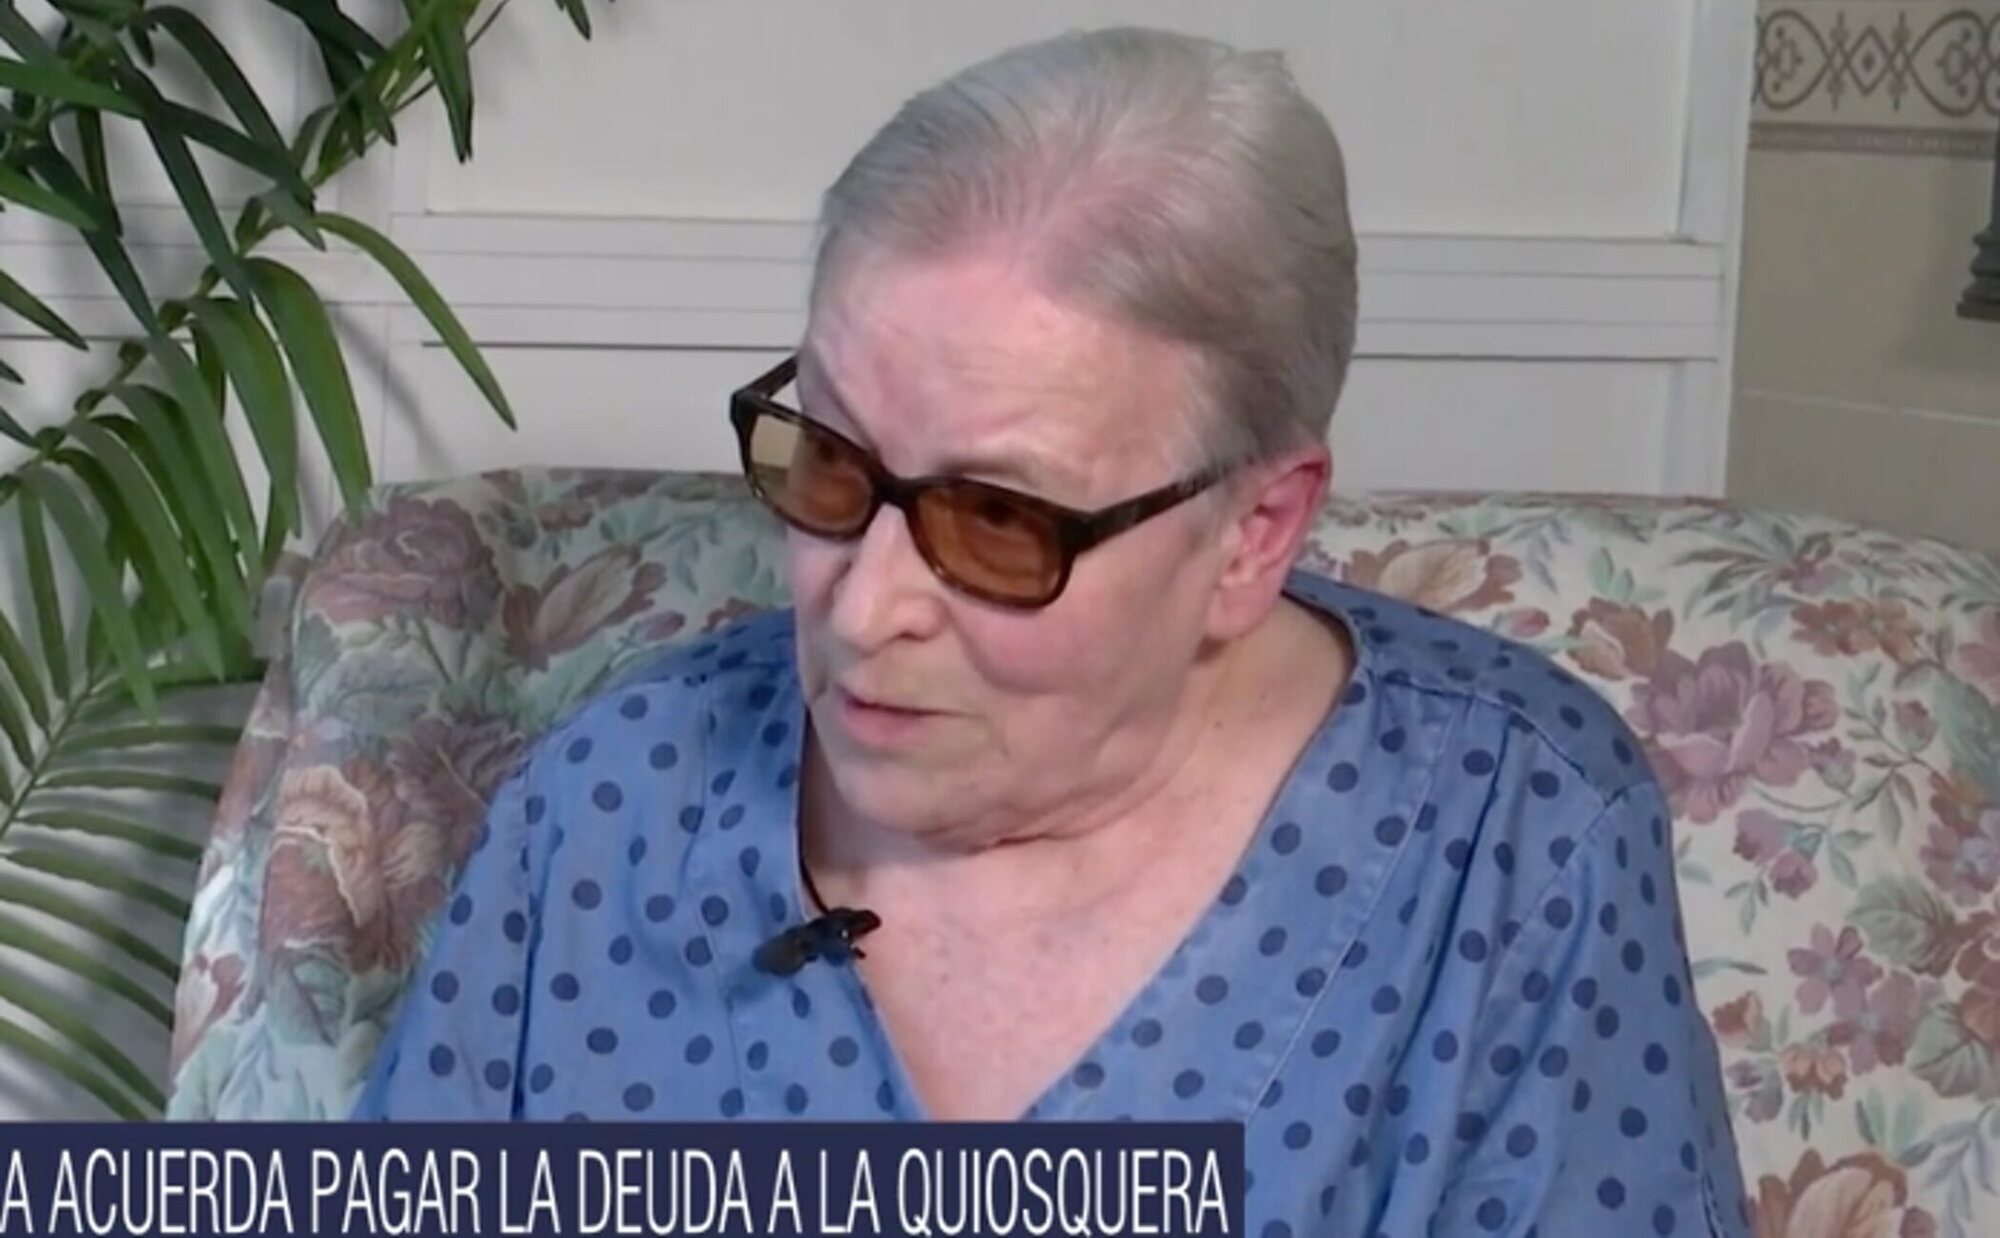 Loli 'la quiosquera' consigue que Isabel Pantoja le pague la deuda de 76.000 euros pero con condiciones